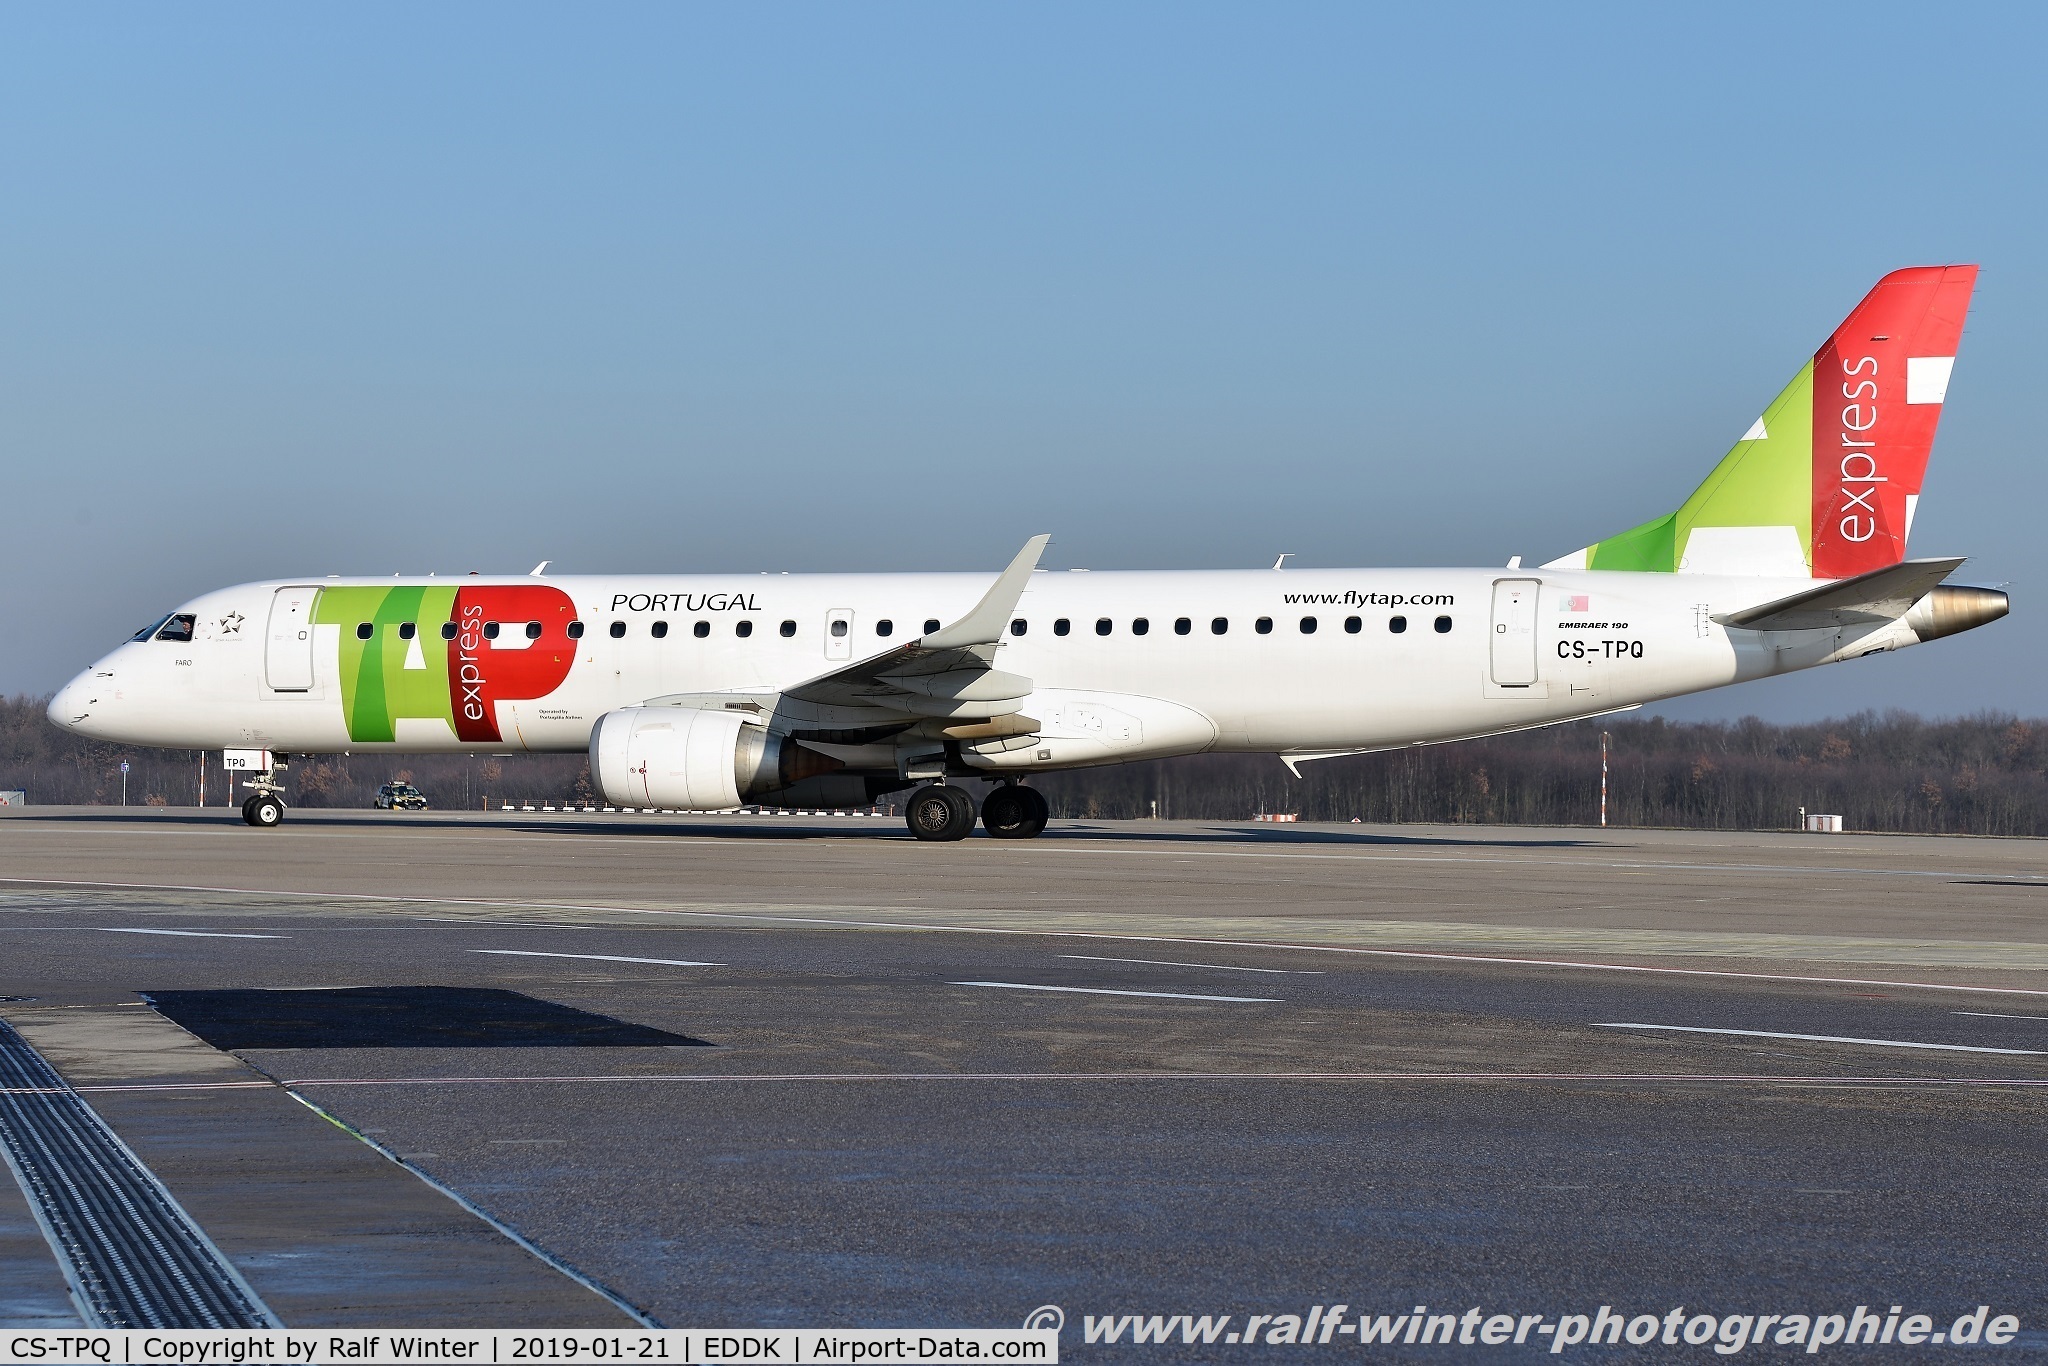 CS-TPQ, 2011 Embraer 190LR (ERJ-190-100LR) C/N 19000450, Embraer ERJ-190LR 190-100LR - NI PGA Portugalia opfor TAP Express - 19000450 - CS-TPQ - 21.01.2019 - CGN